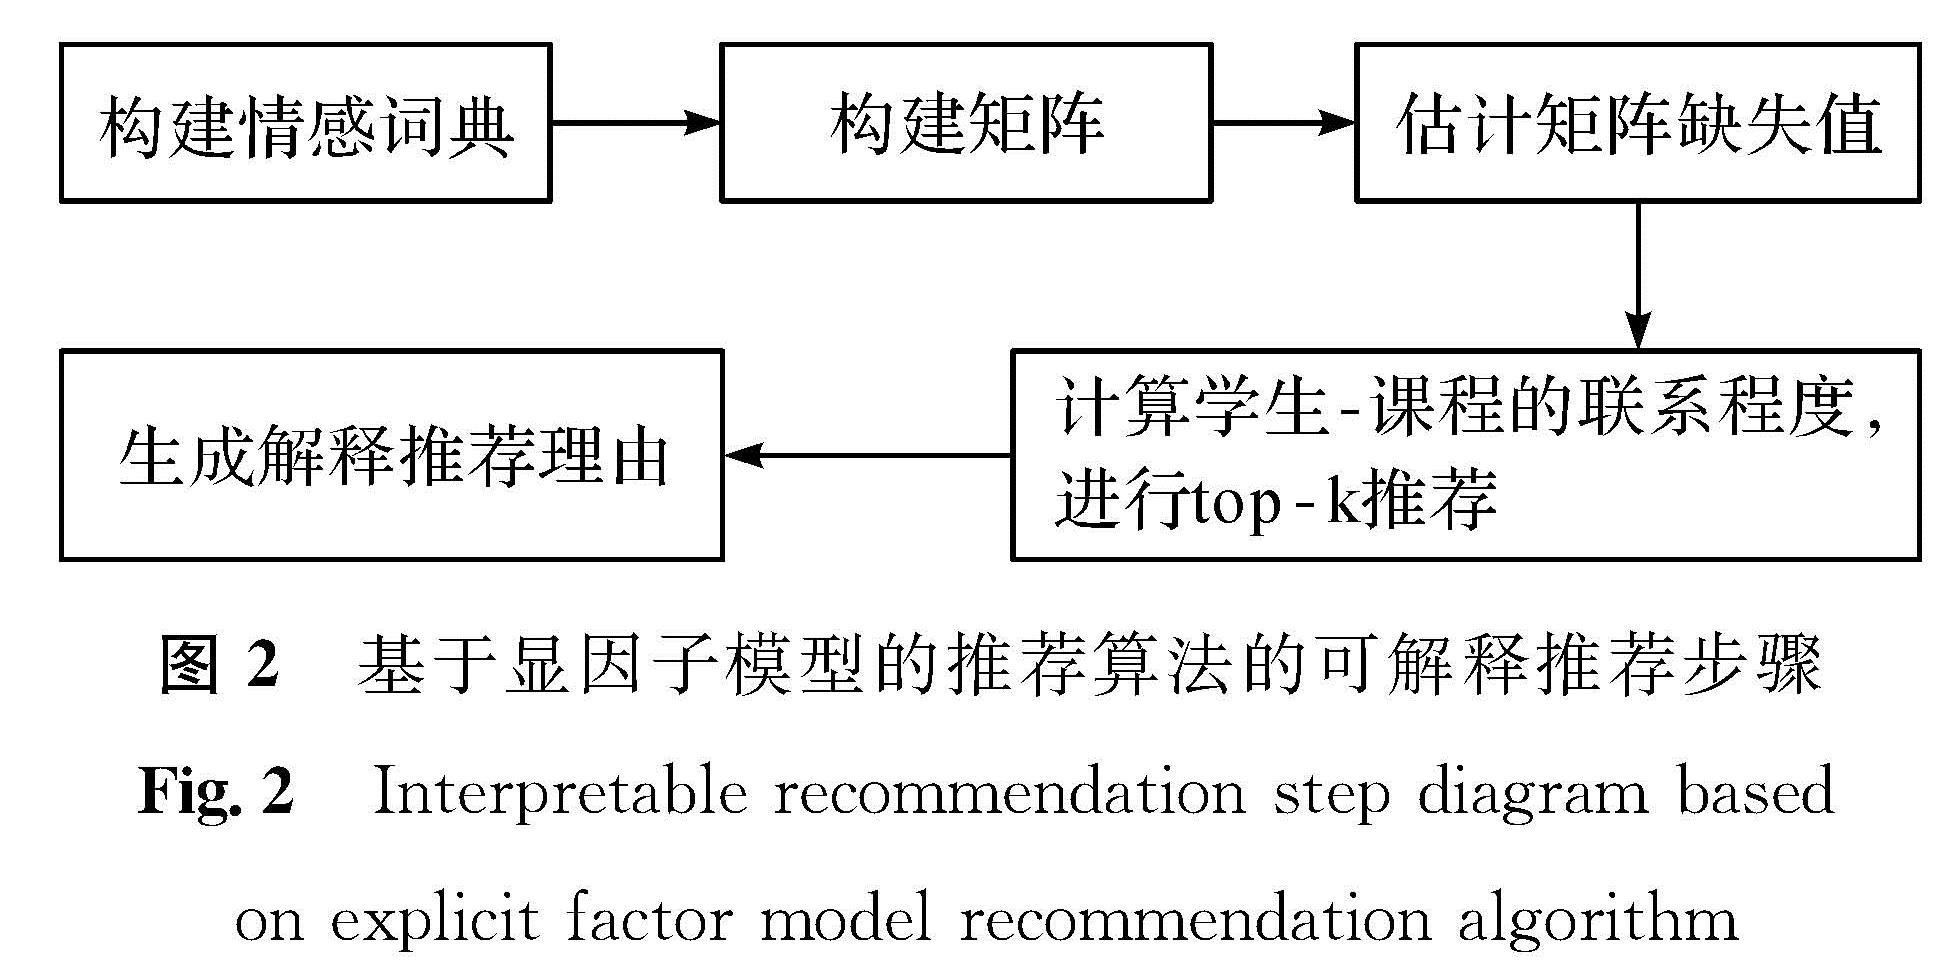 图2 基于显因子模型的推荐算法的可解释推荐步骤<br/>Fig.2 Interpretable recommendation step diagram based on explicit factor model recommendation algorithm